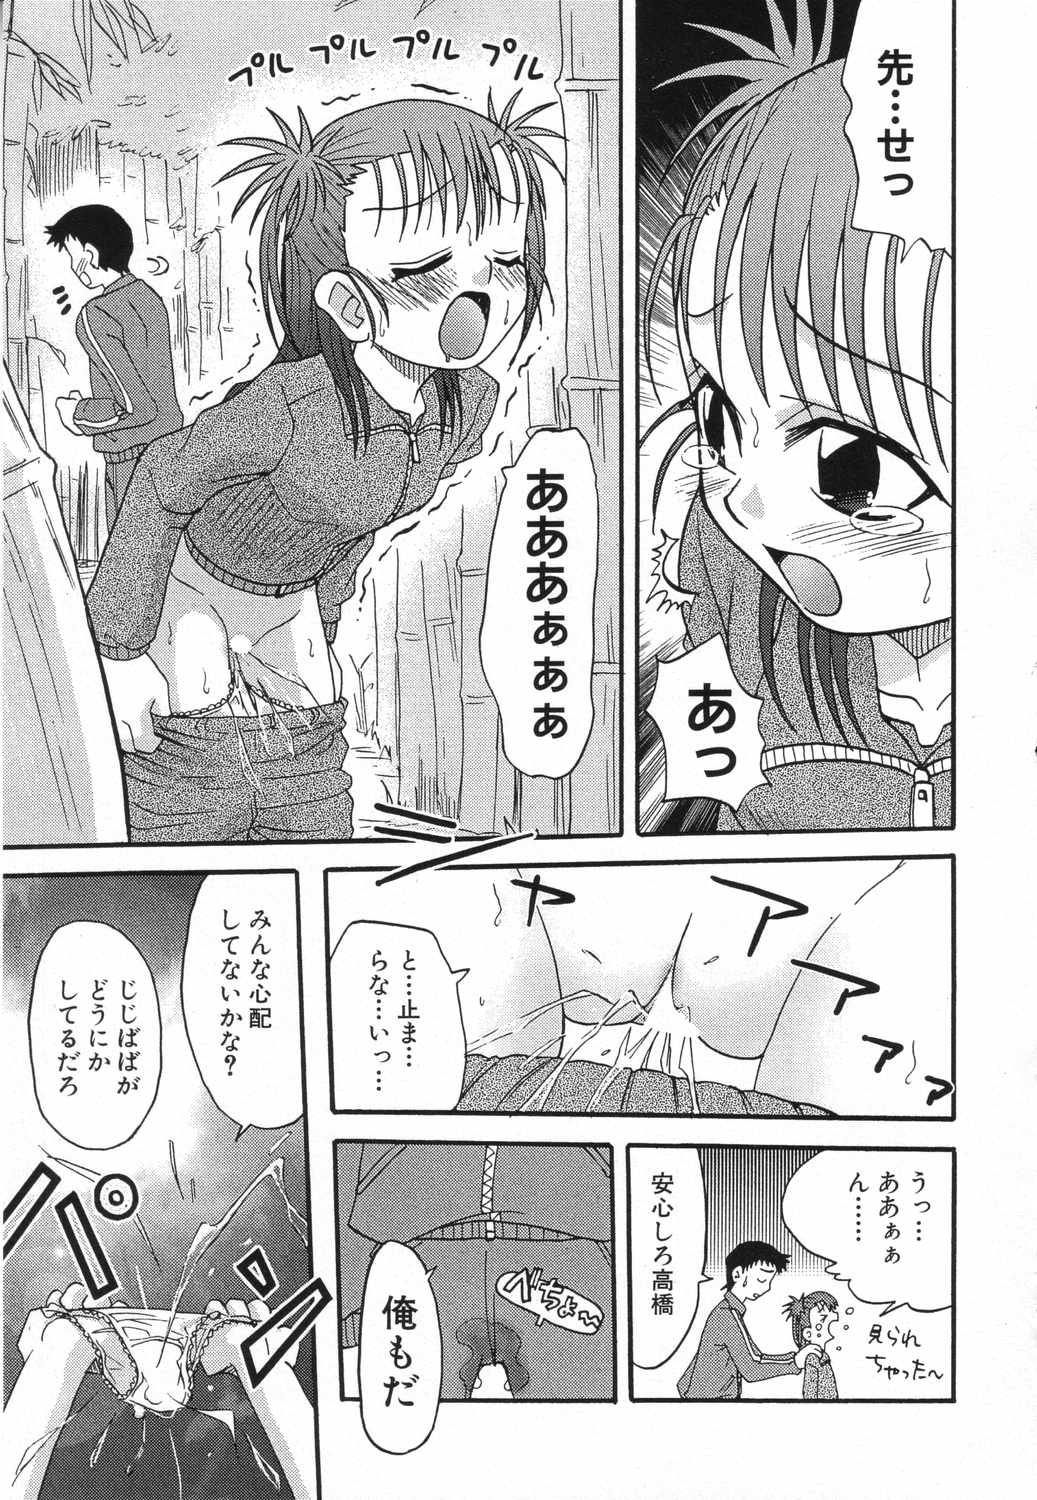 [Anthology] LOCO vol.5 Aki no Omorashi Musume Tokushuu page 44 full